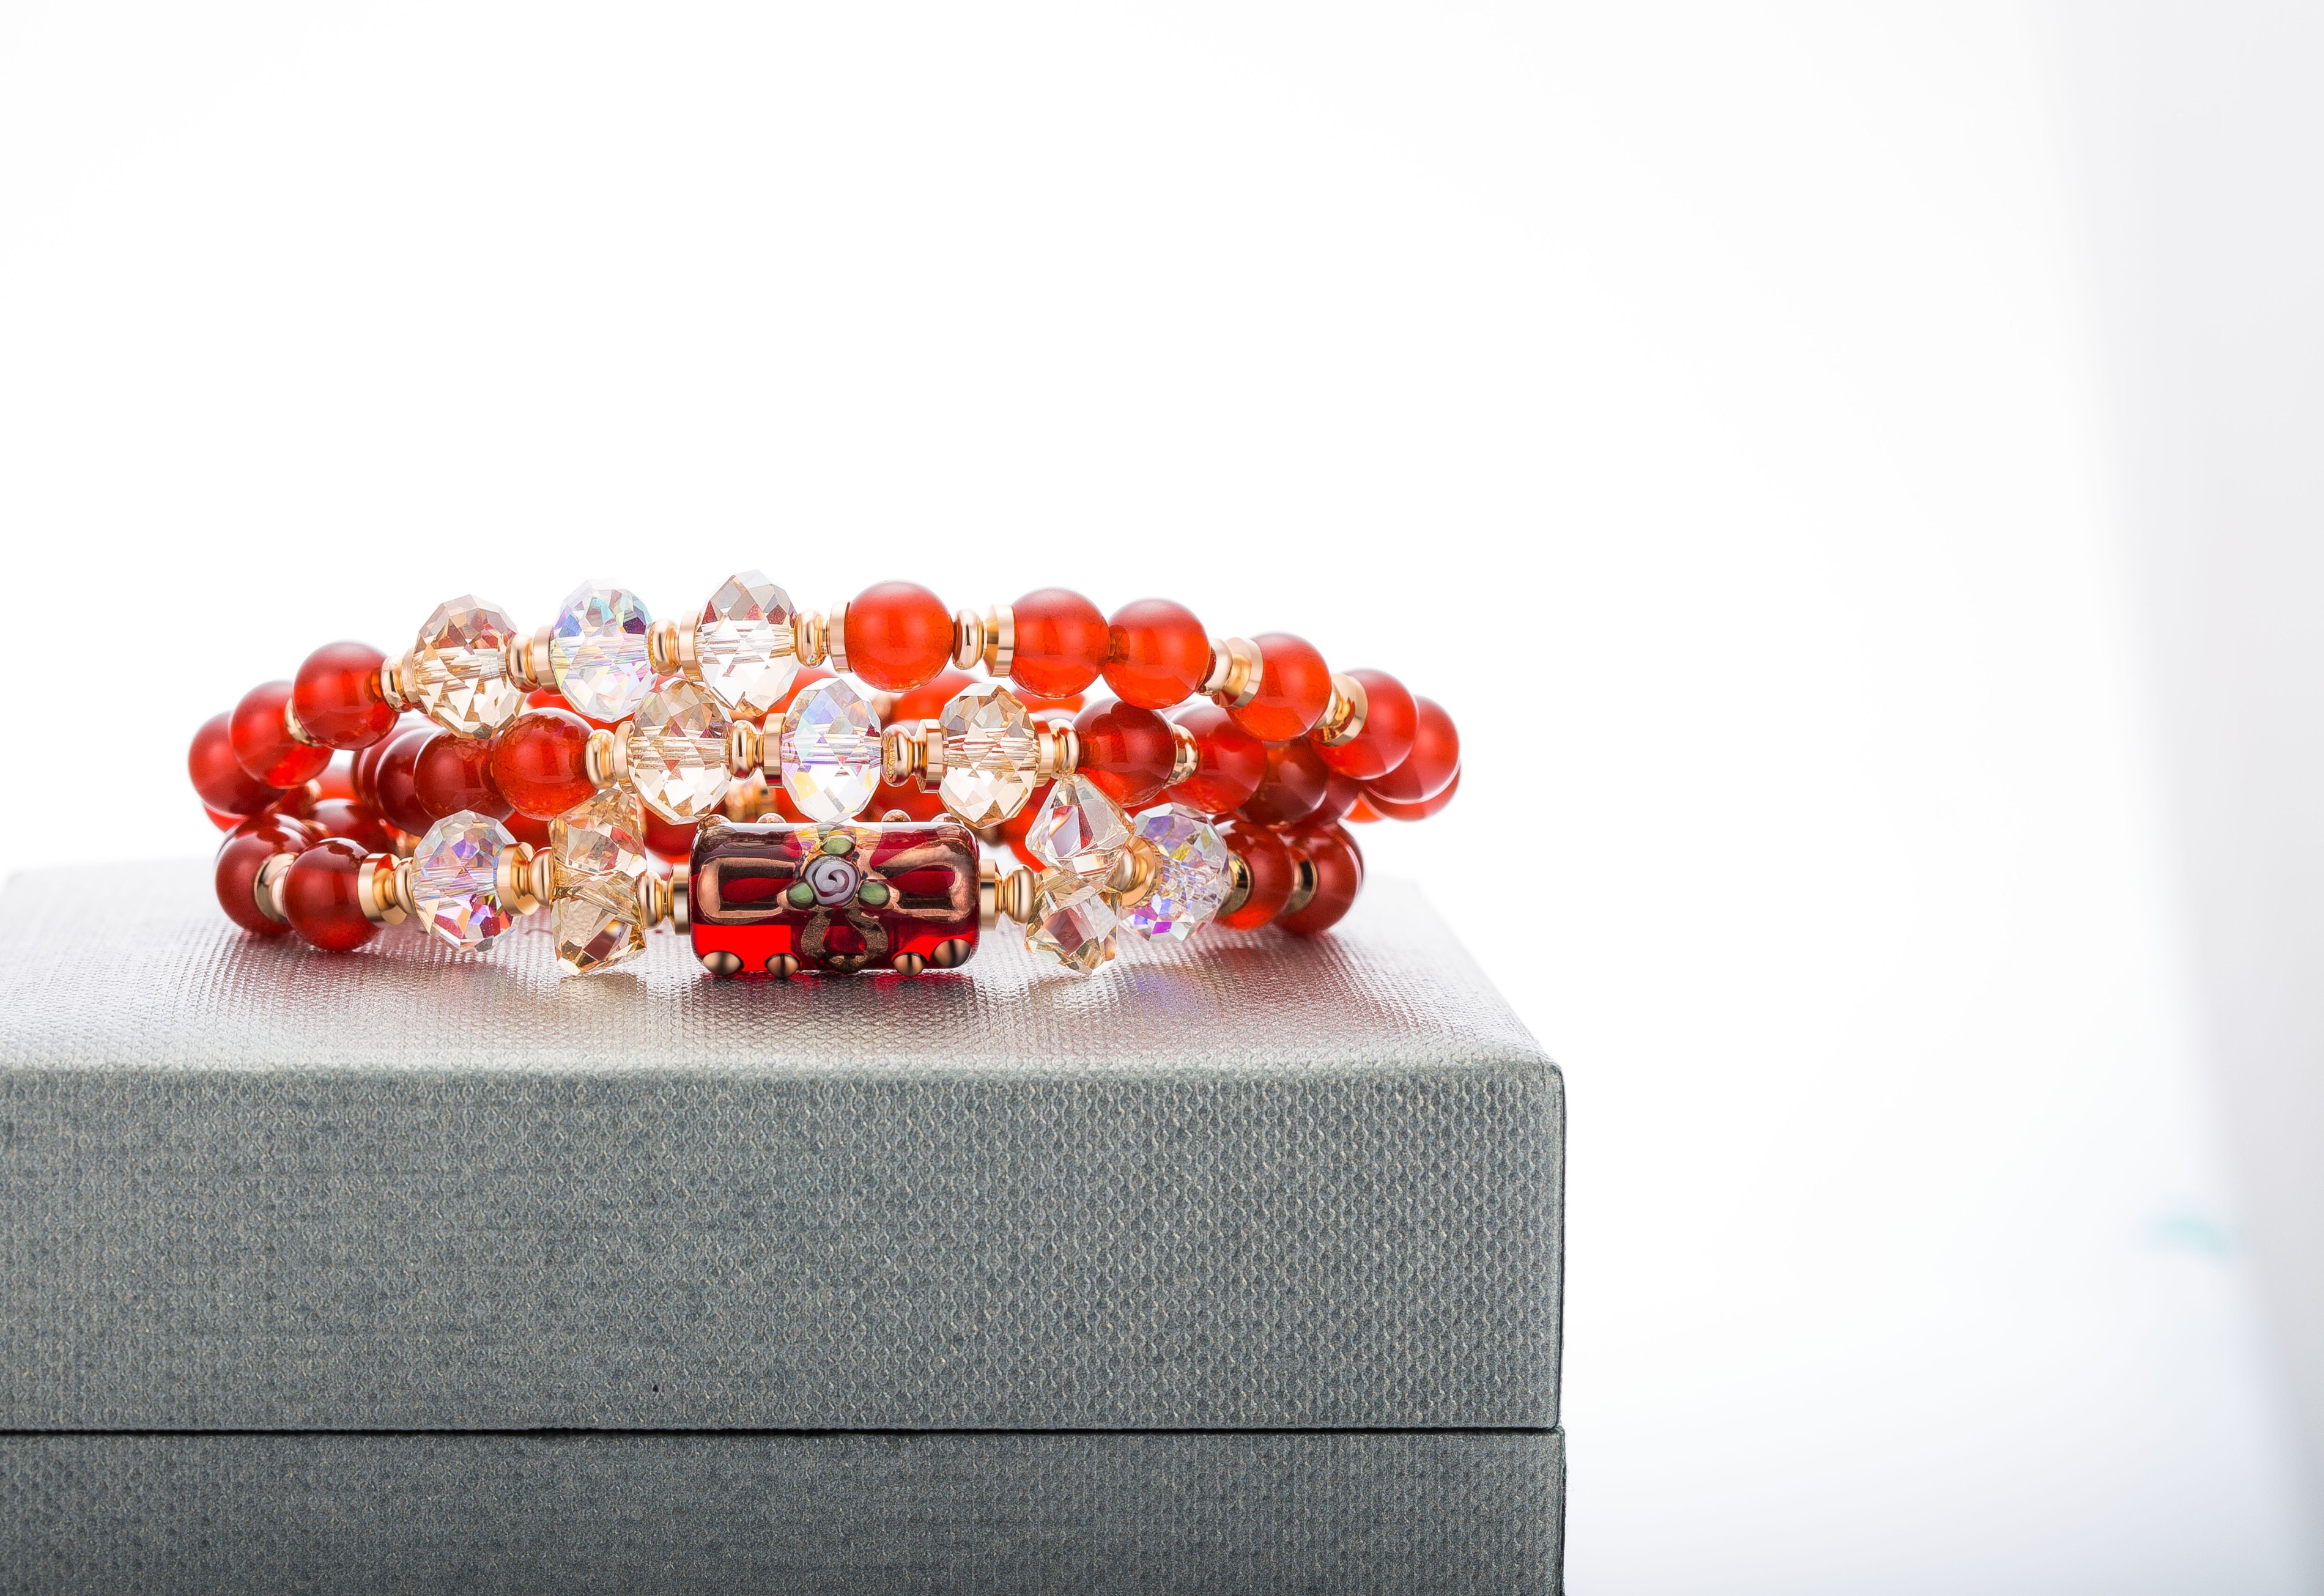 Jewelry Manufacturer High quality Glass Bracelet Jewelry Women Red Beads Bracelets